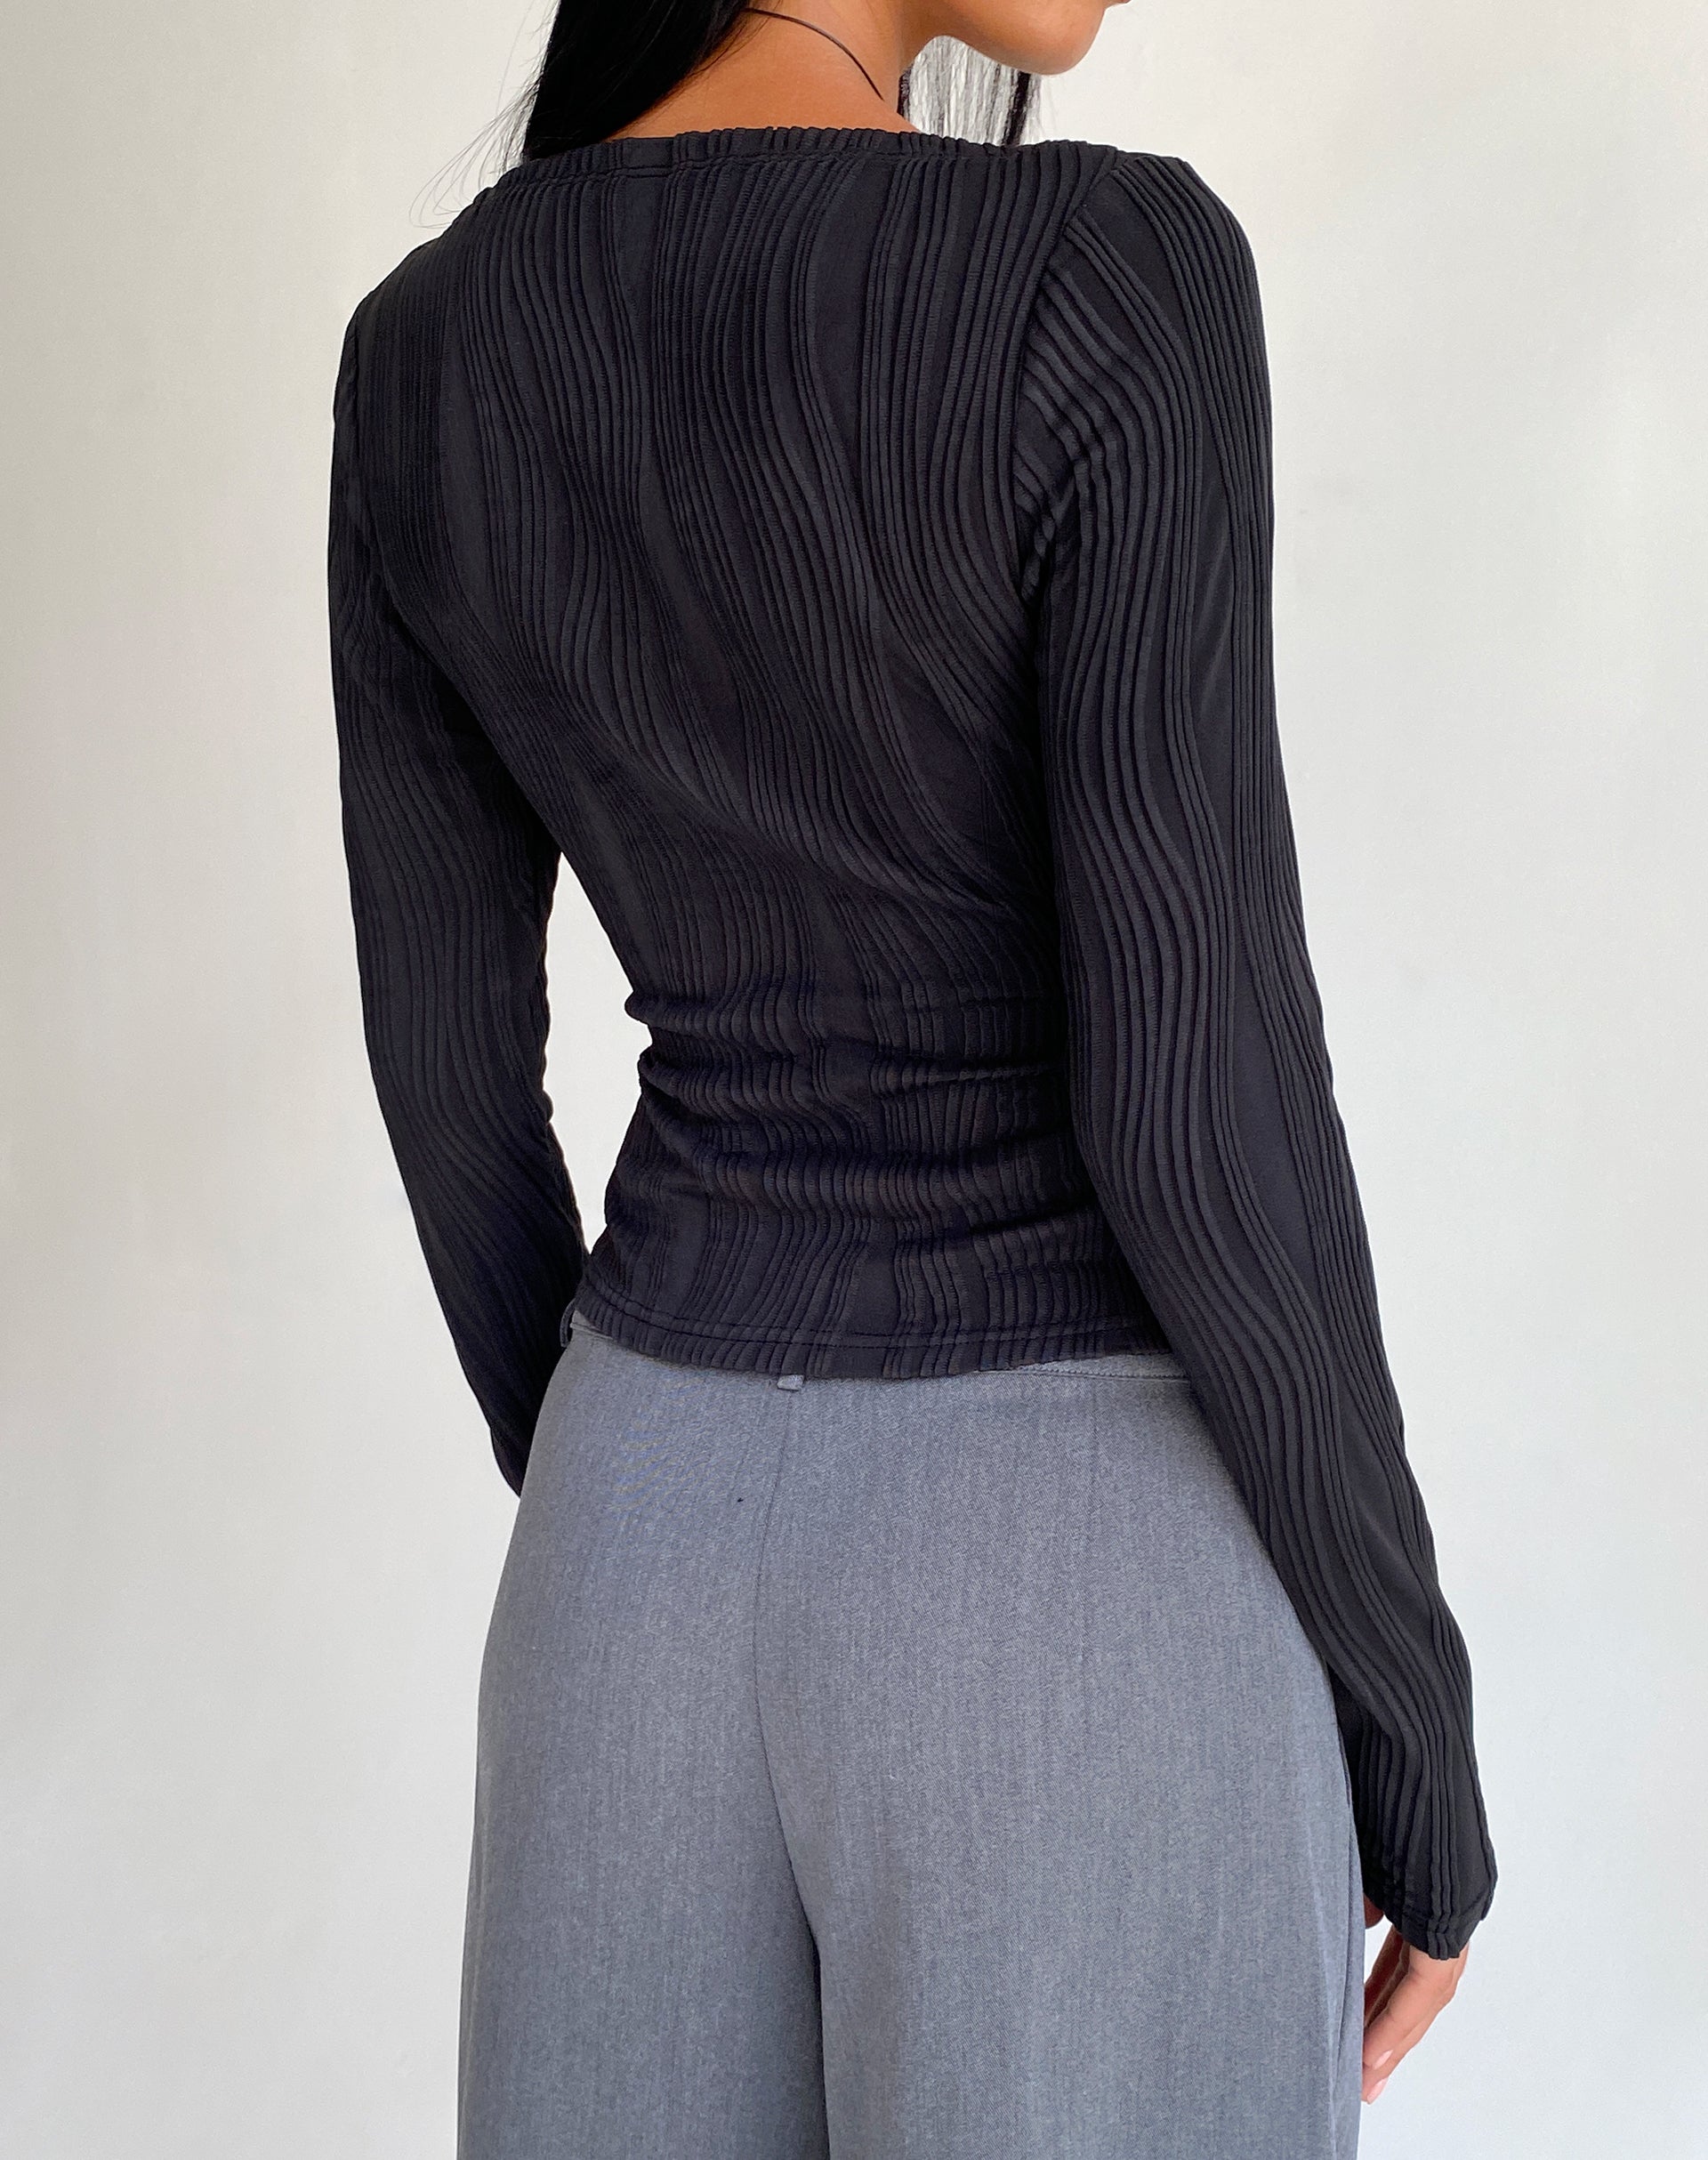 Image of Amabon Long Sleeve Crop Top in Crinkle Black